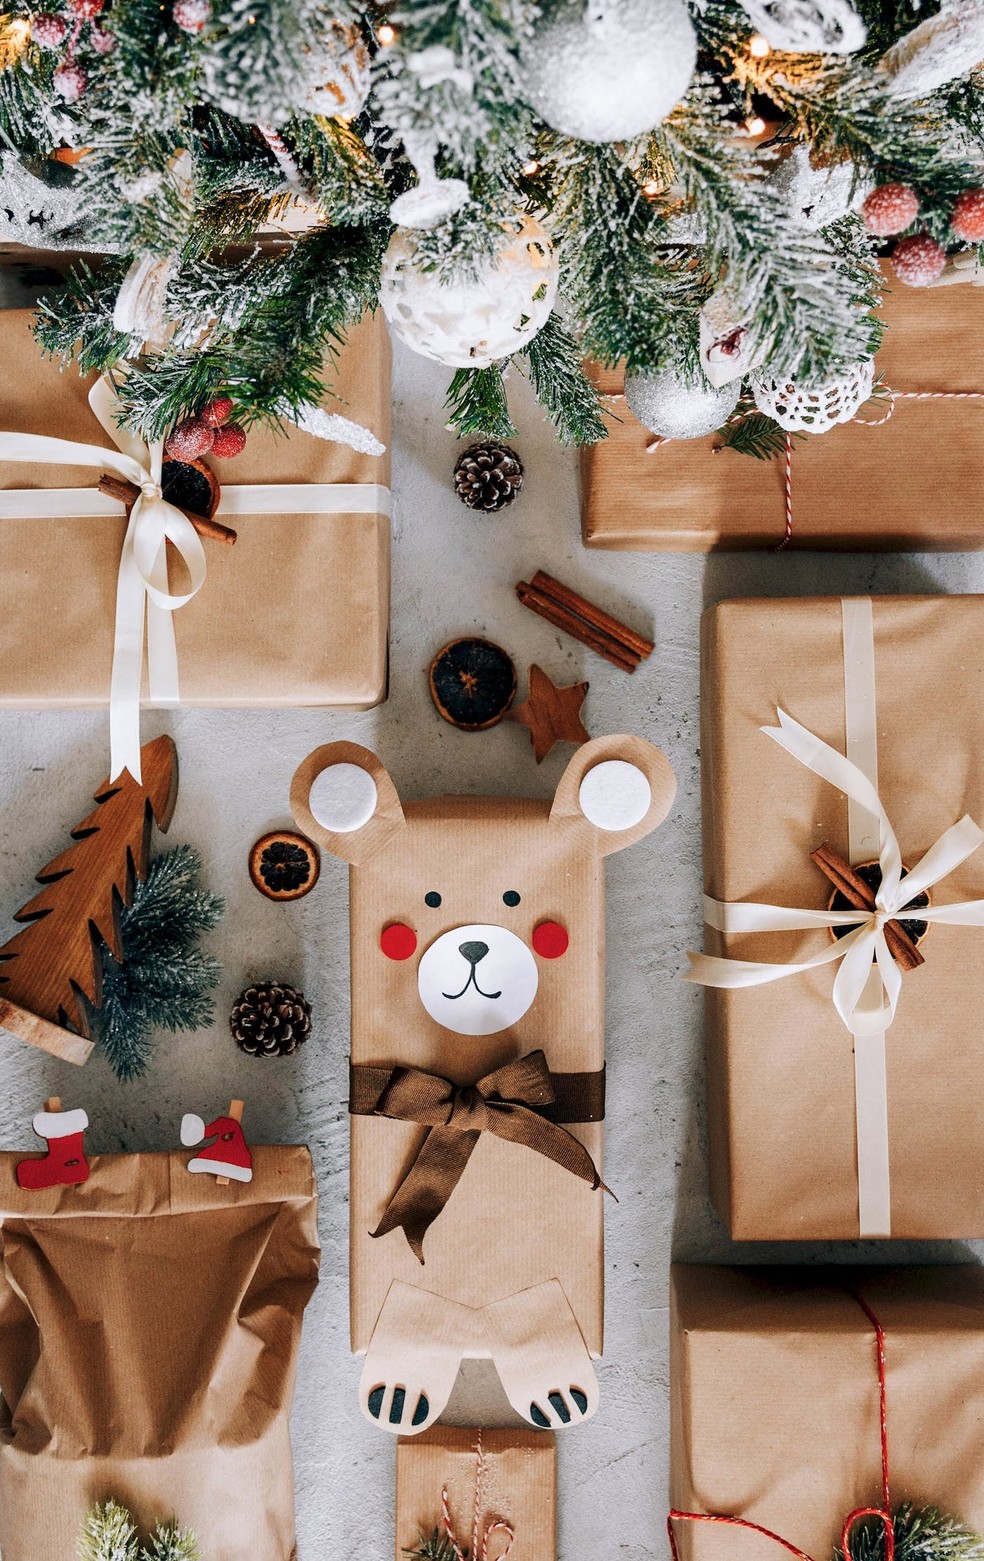 Os embrulhos de presente feitos à mão também ajudam a compor a decoração natalina  — Foto: Pexels / Marko Klaric / Creative Commons